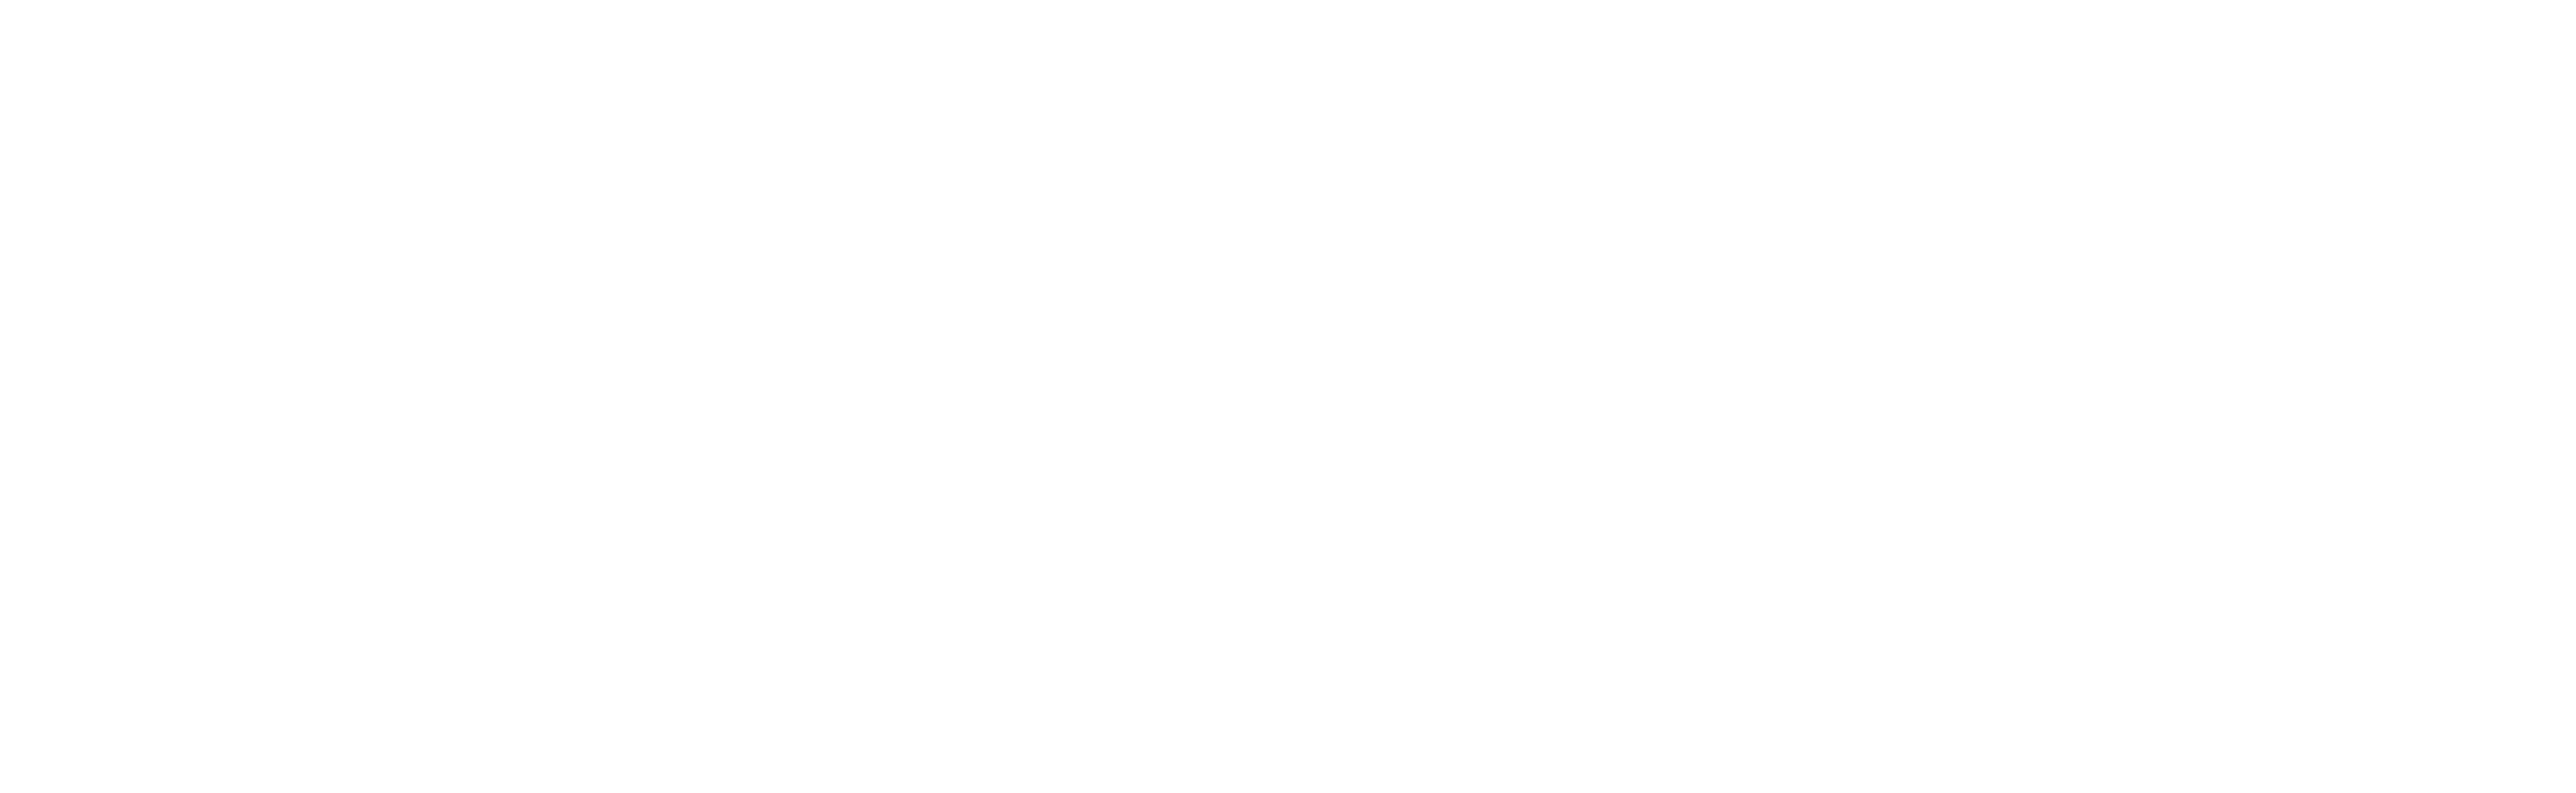 Mahart Ports